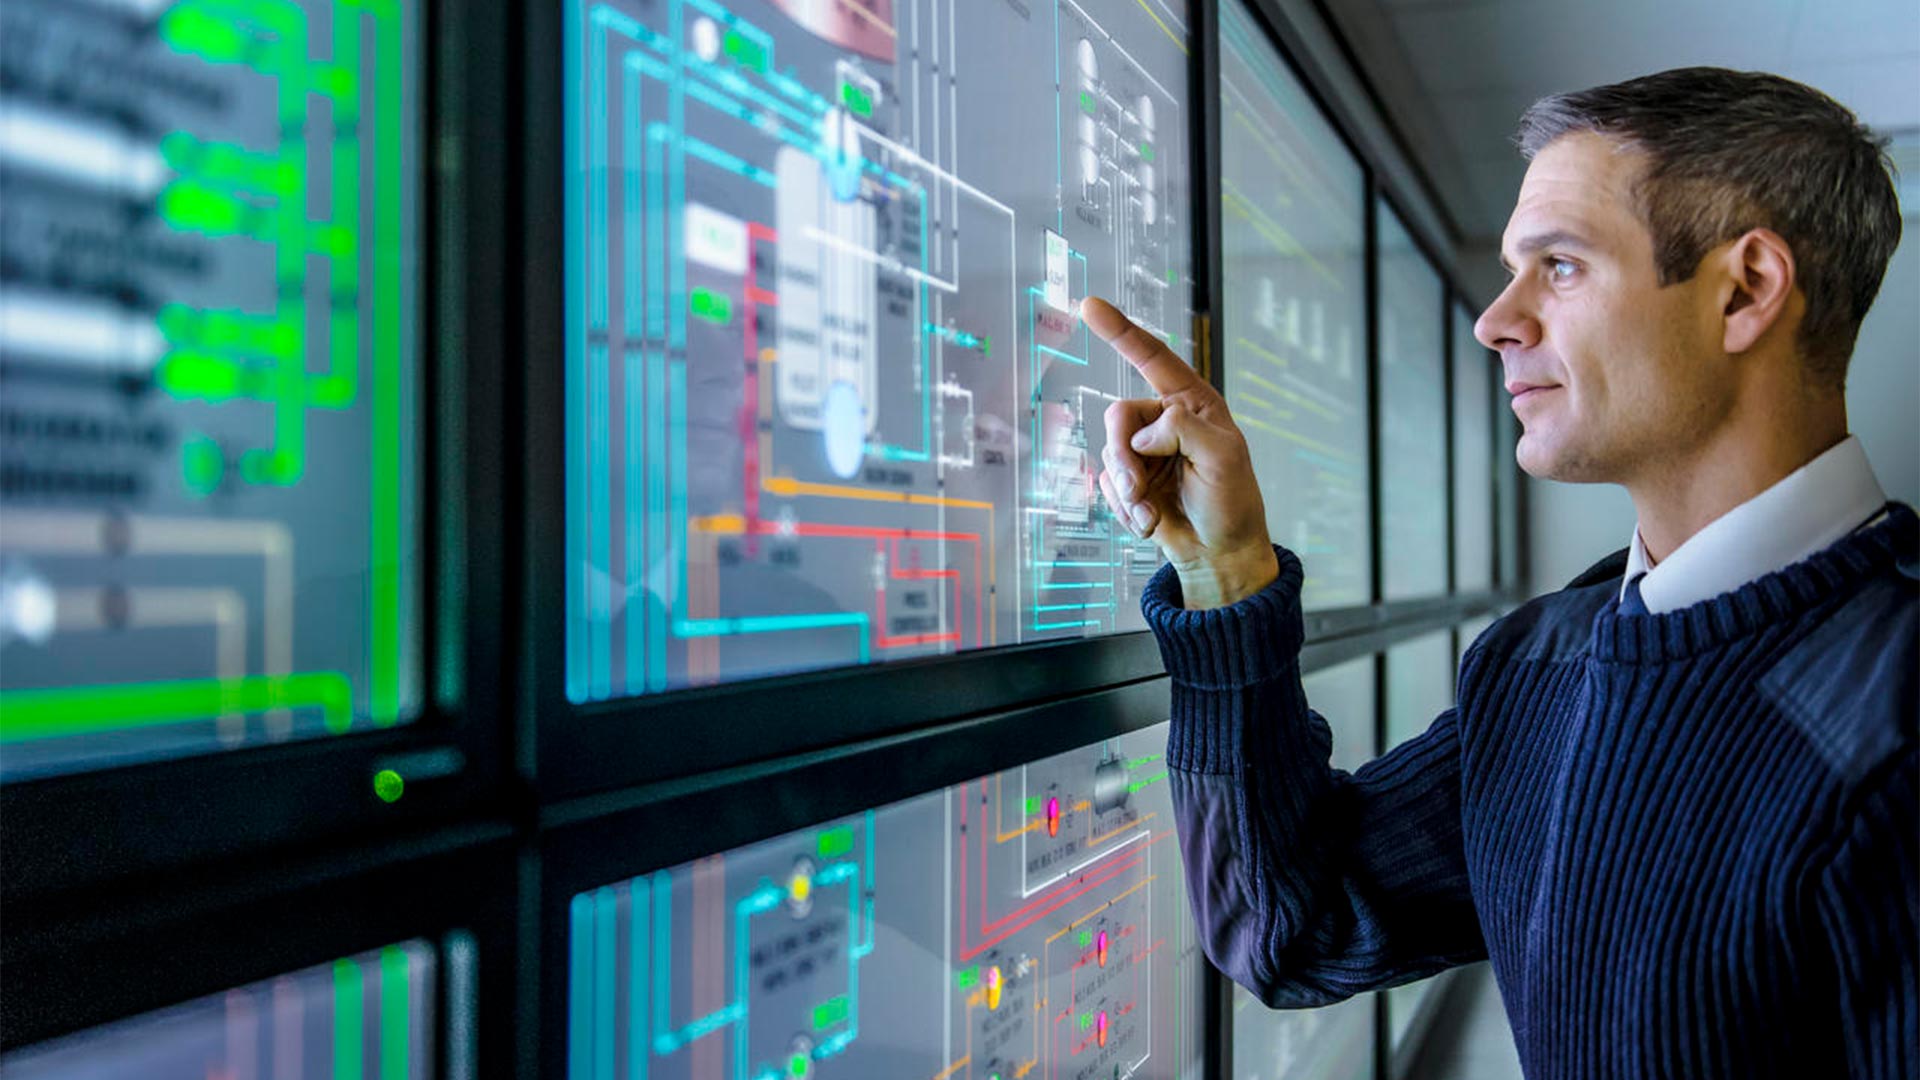 Gestor de instalações a utilizar o software de monitorização de energia numa visualização de vários ecrãs, gestão de energia industrial.